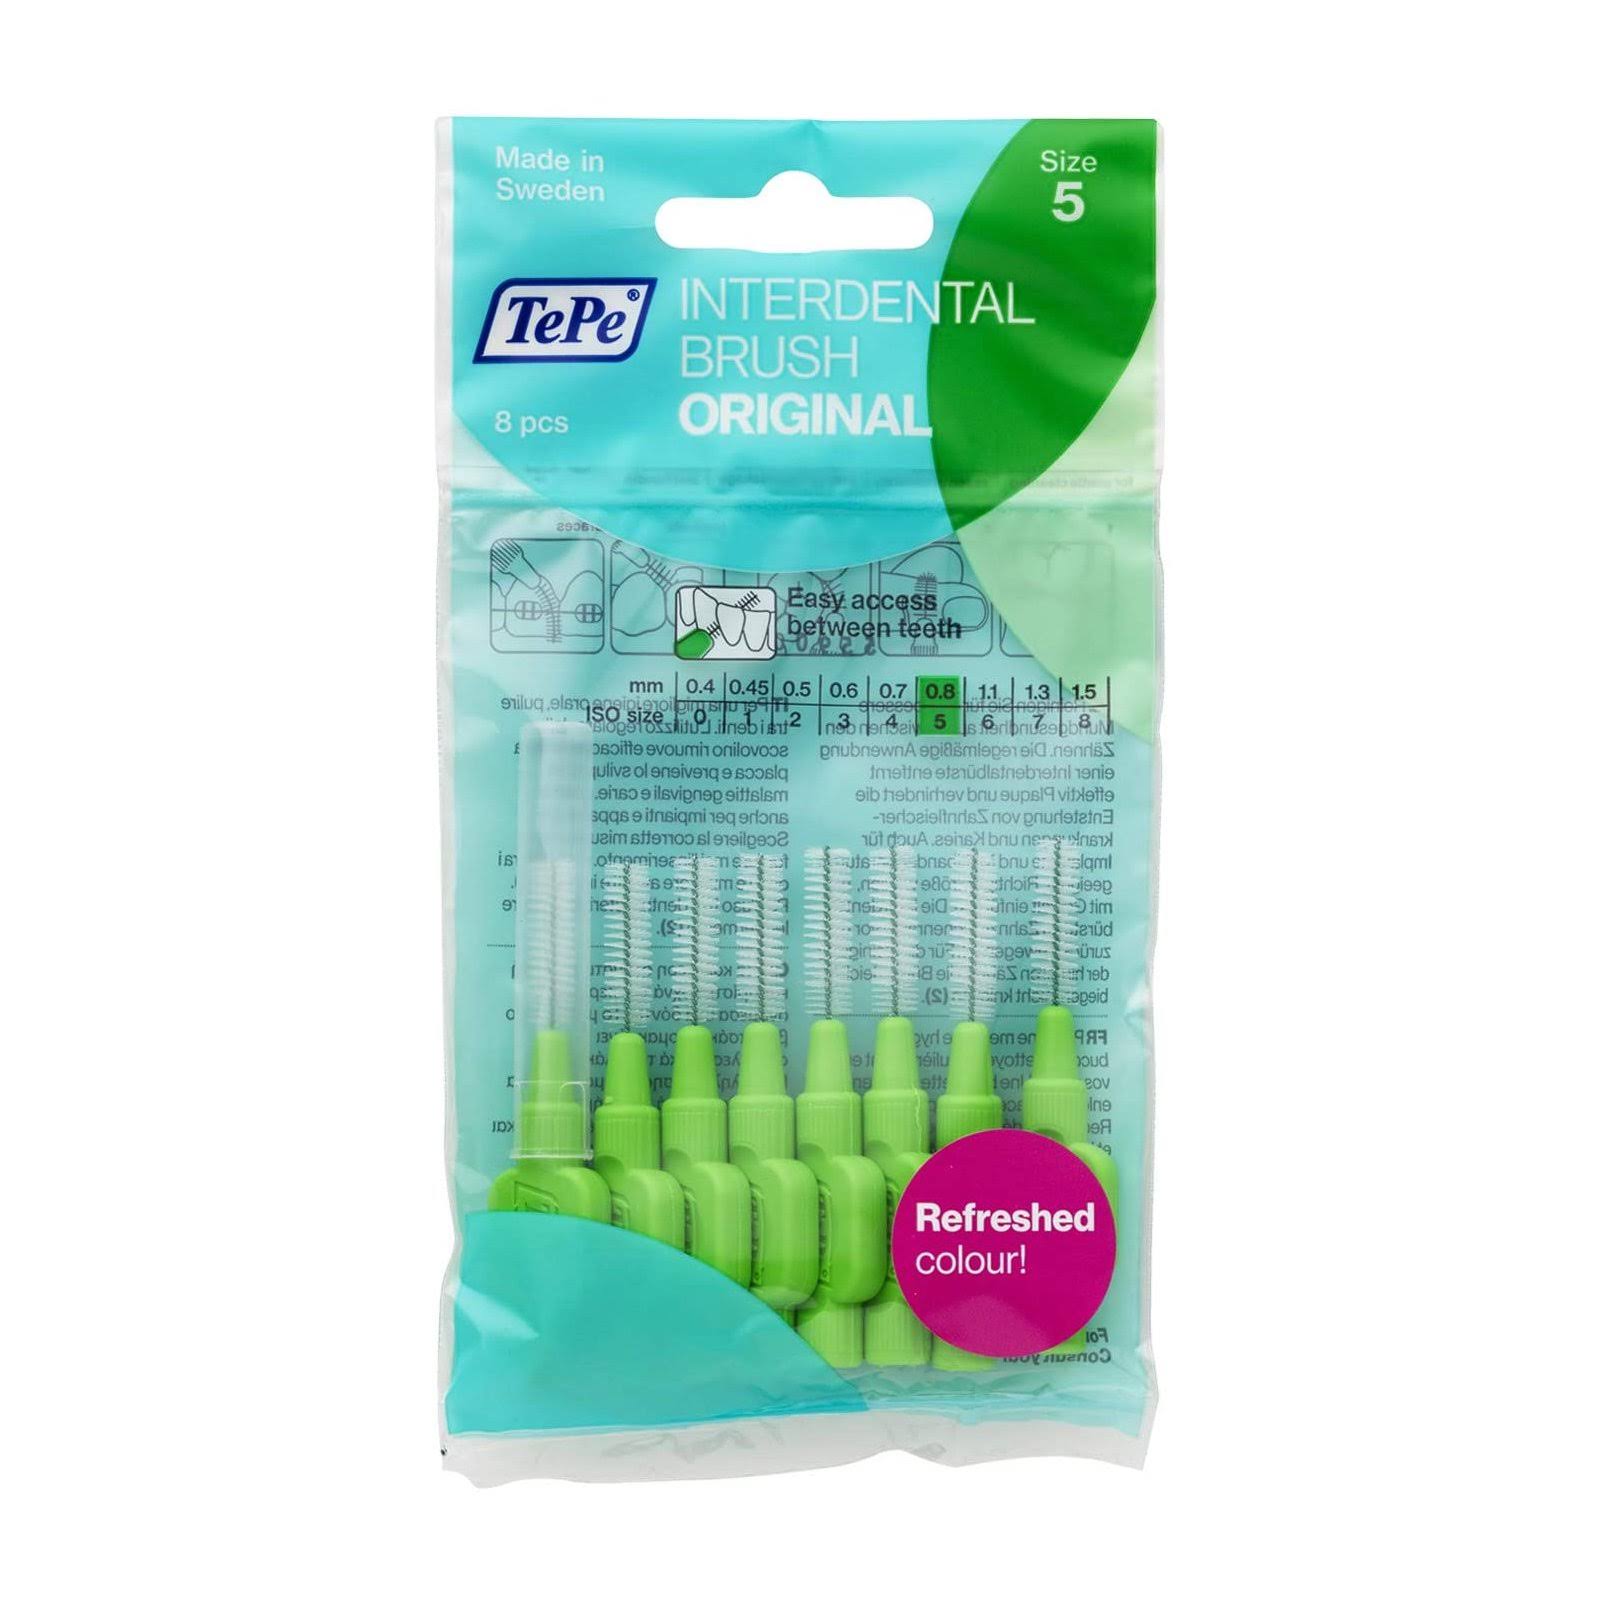 TePe Interdental Brush - Green (0.8mm) Size 5 - 8 Pack